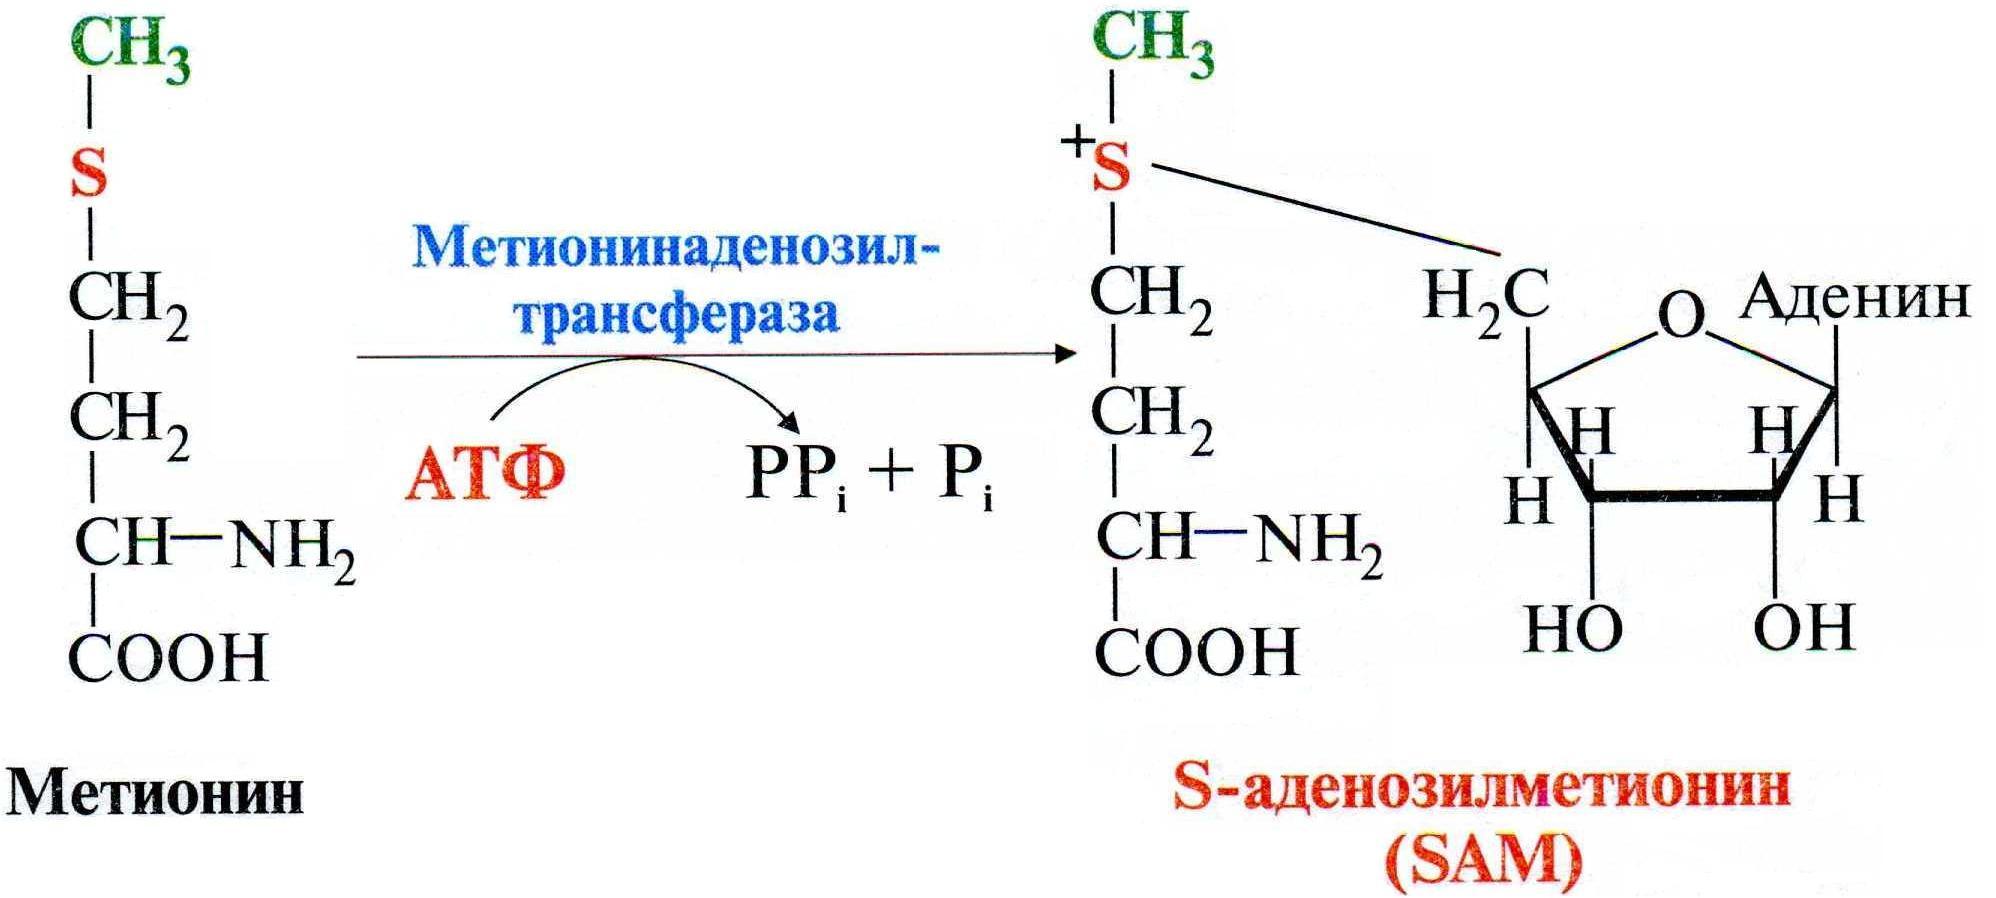 Метанин. Реакция образования активной формы метионина. Роль метионина в реакциях трансметилирования. Синтез Sam из метионина. Метионин в s-аденозилметионин.